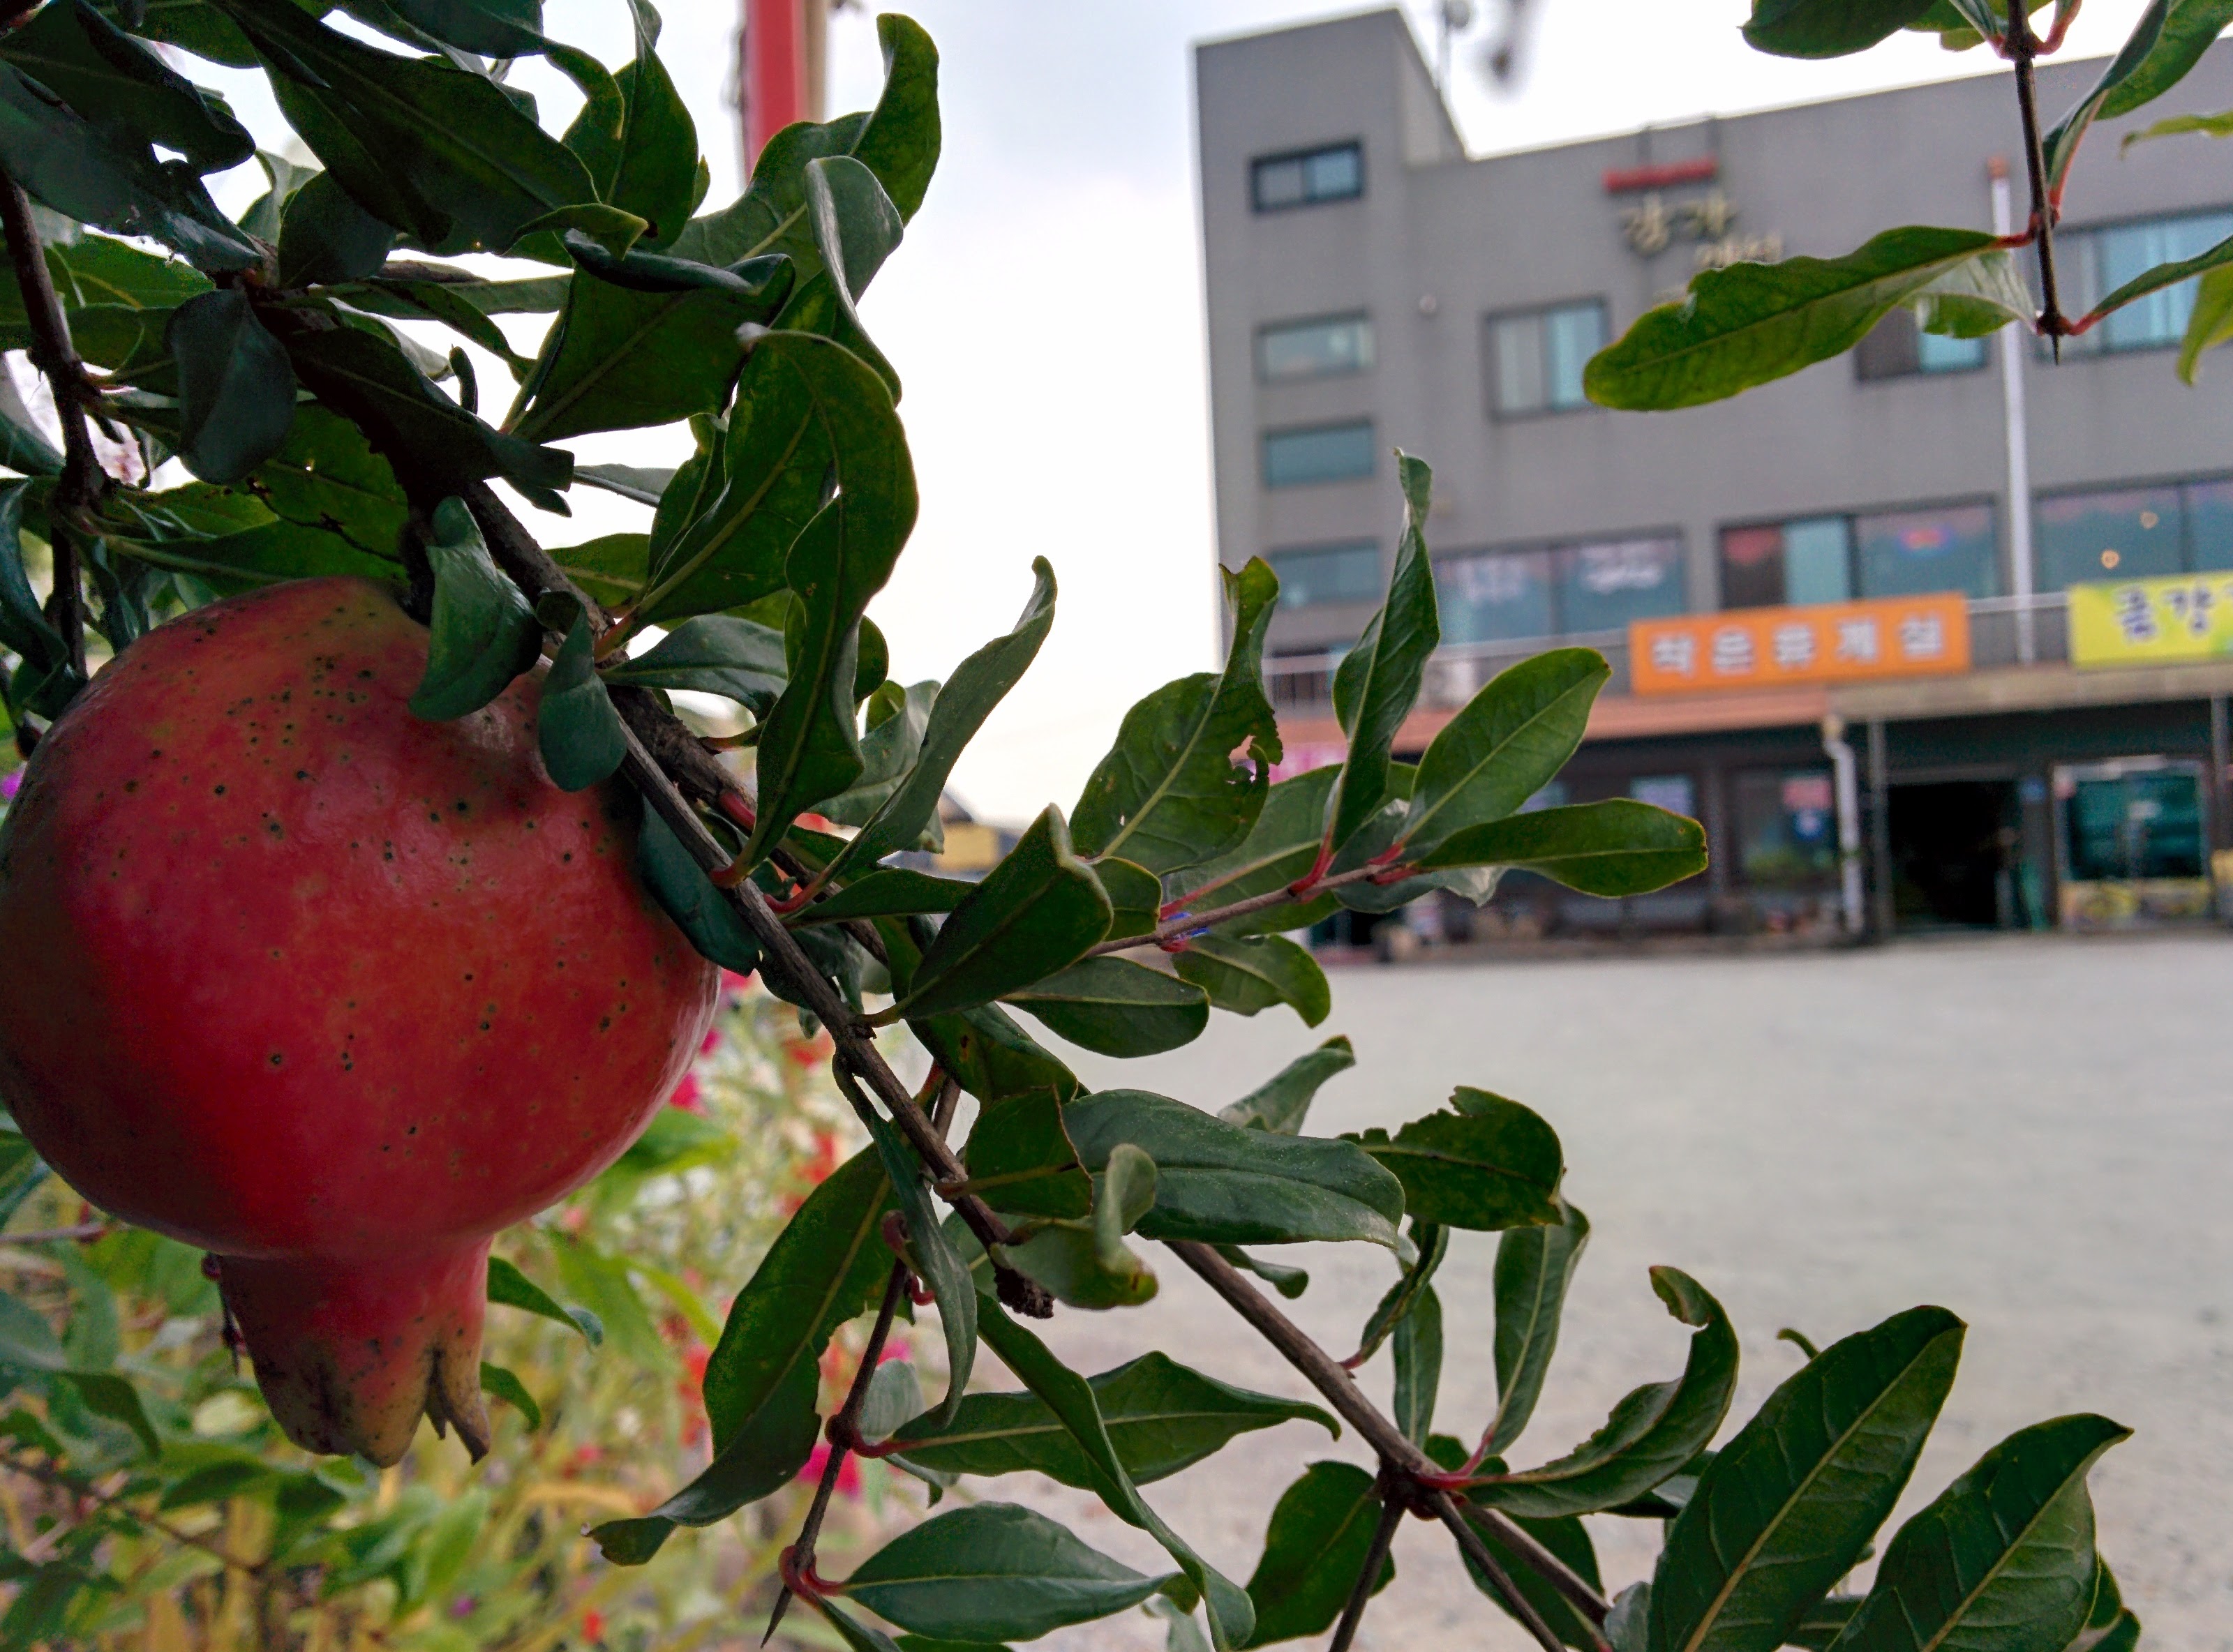 IMG_20150920_144853.jpg 빨간색 석류 열매를 맺은 키작은 석류나무